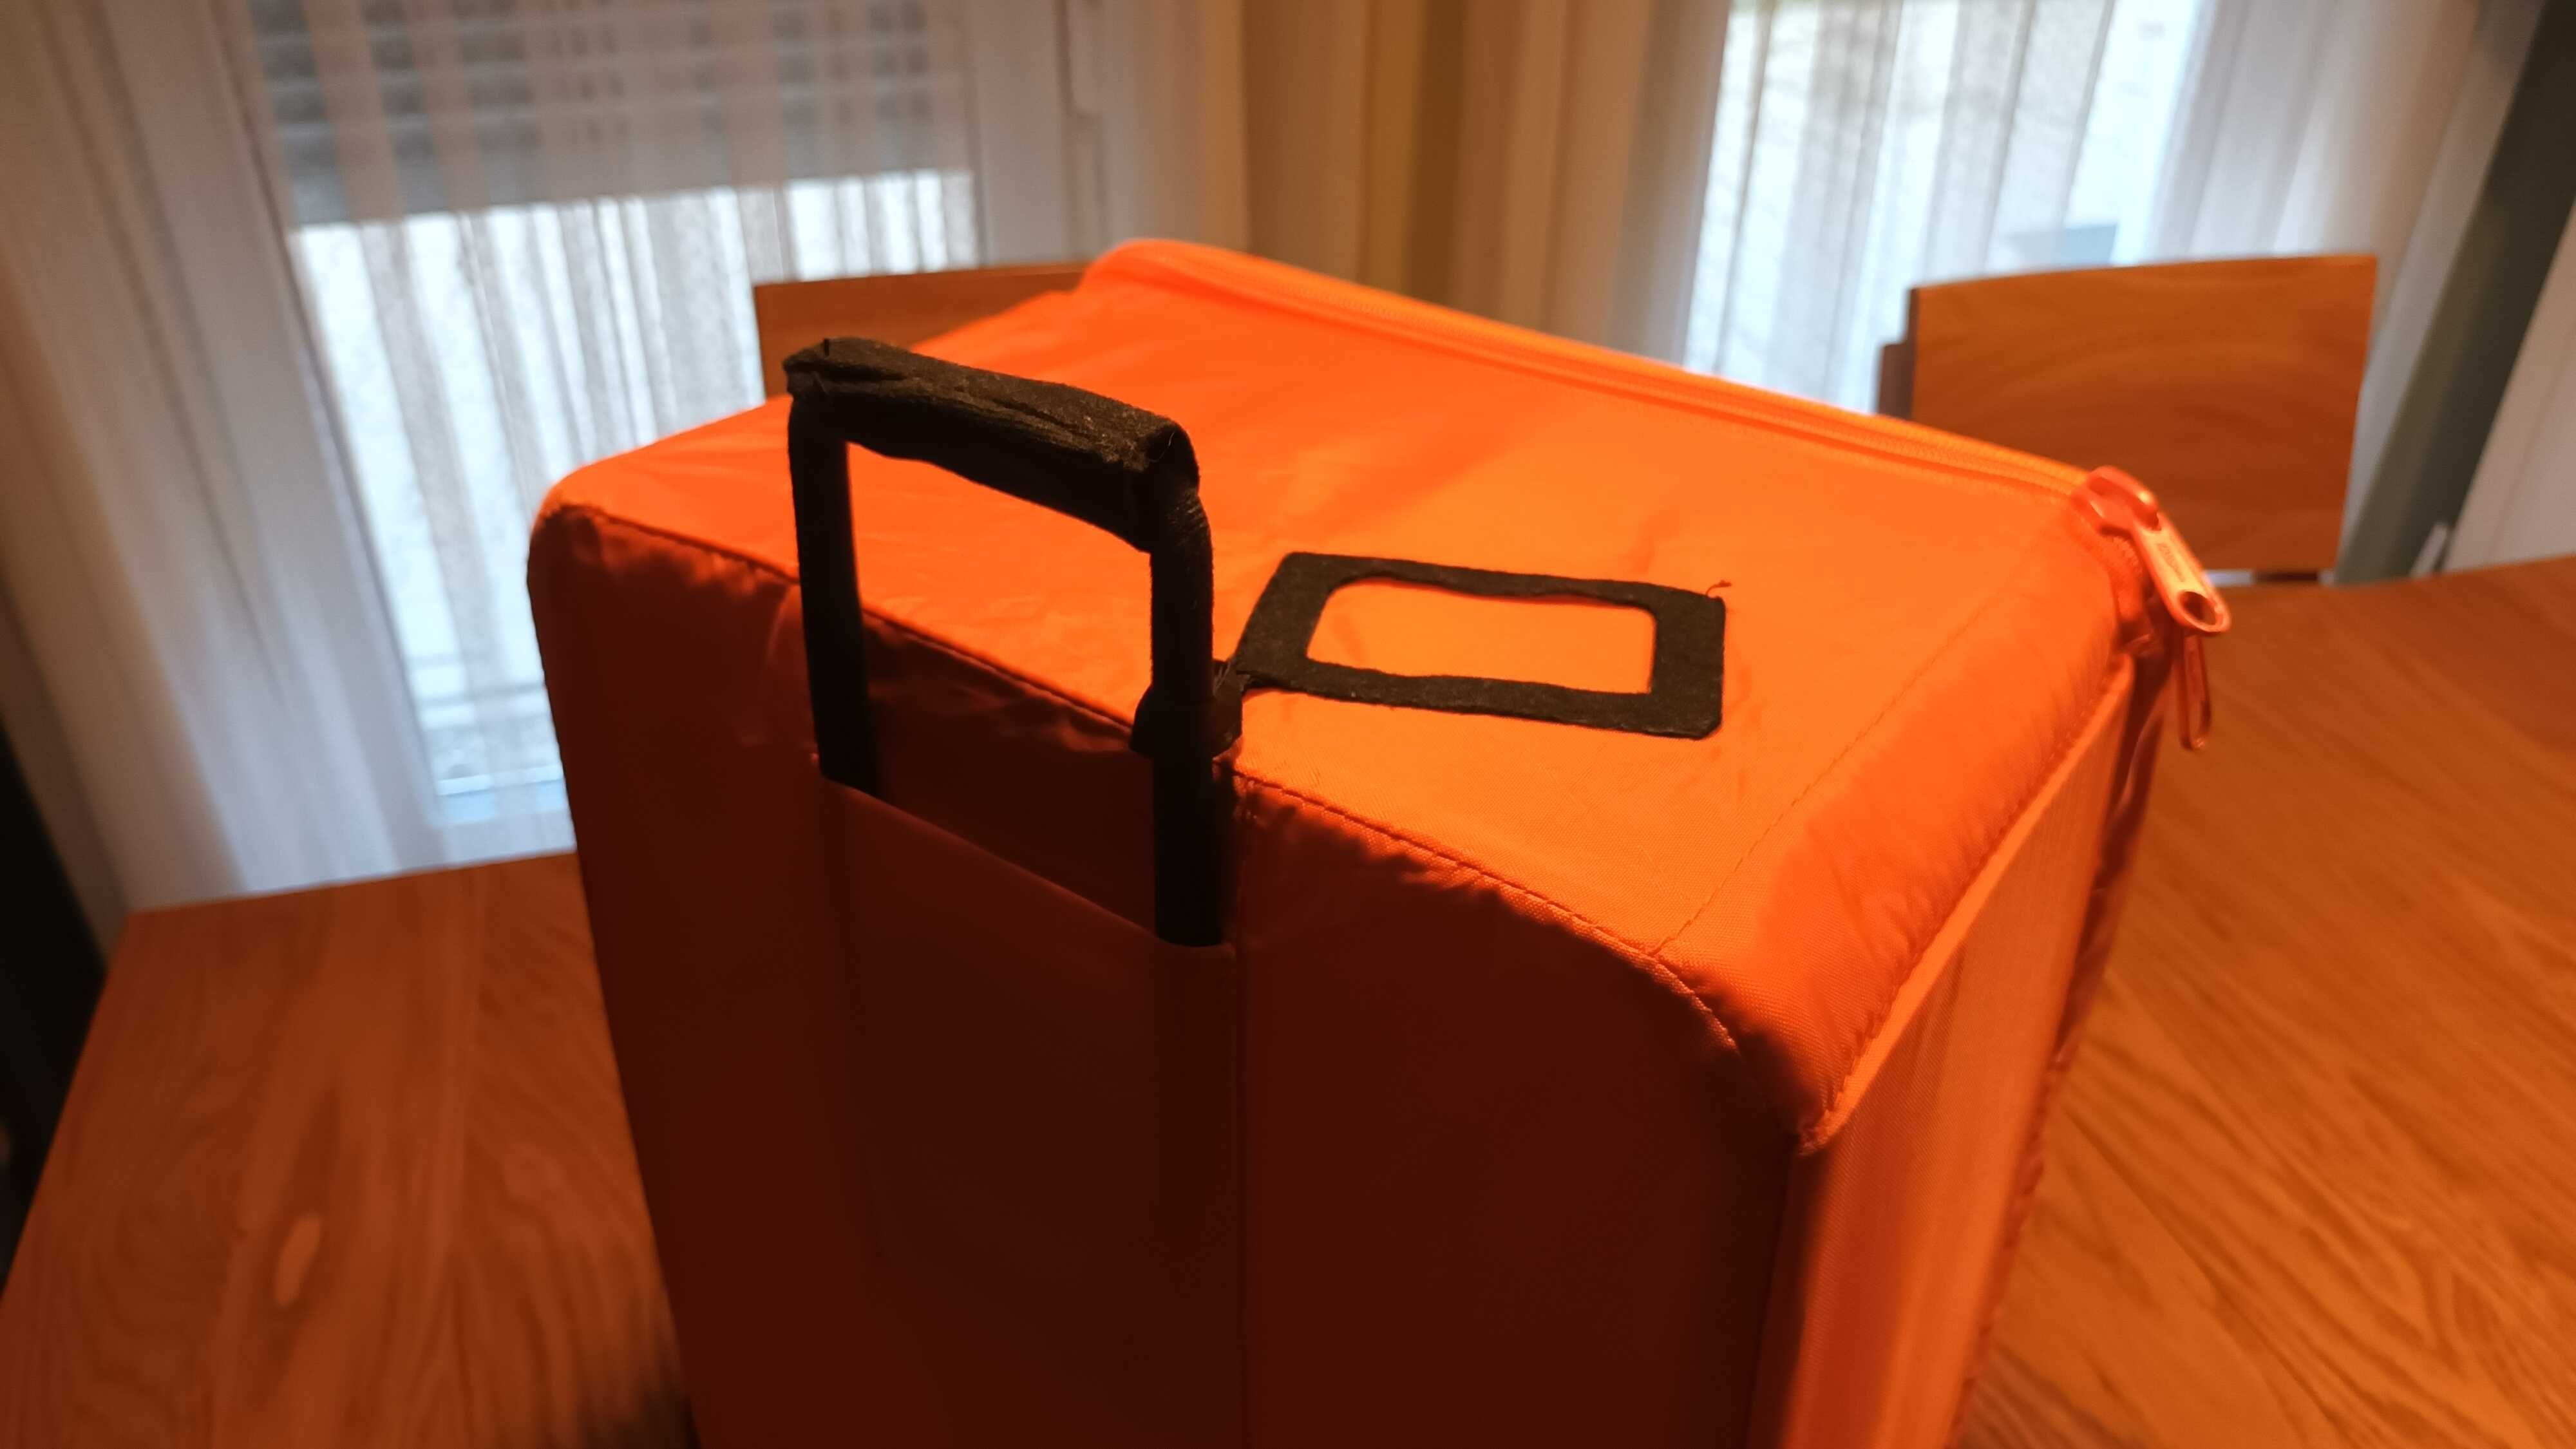 walizka dla dzieci podróżna turystyczna ikea